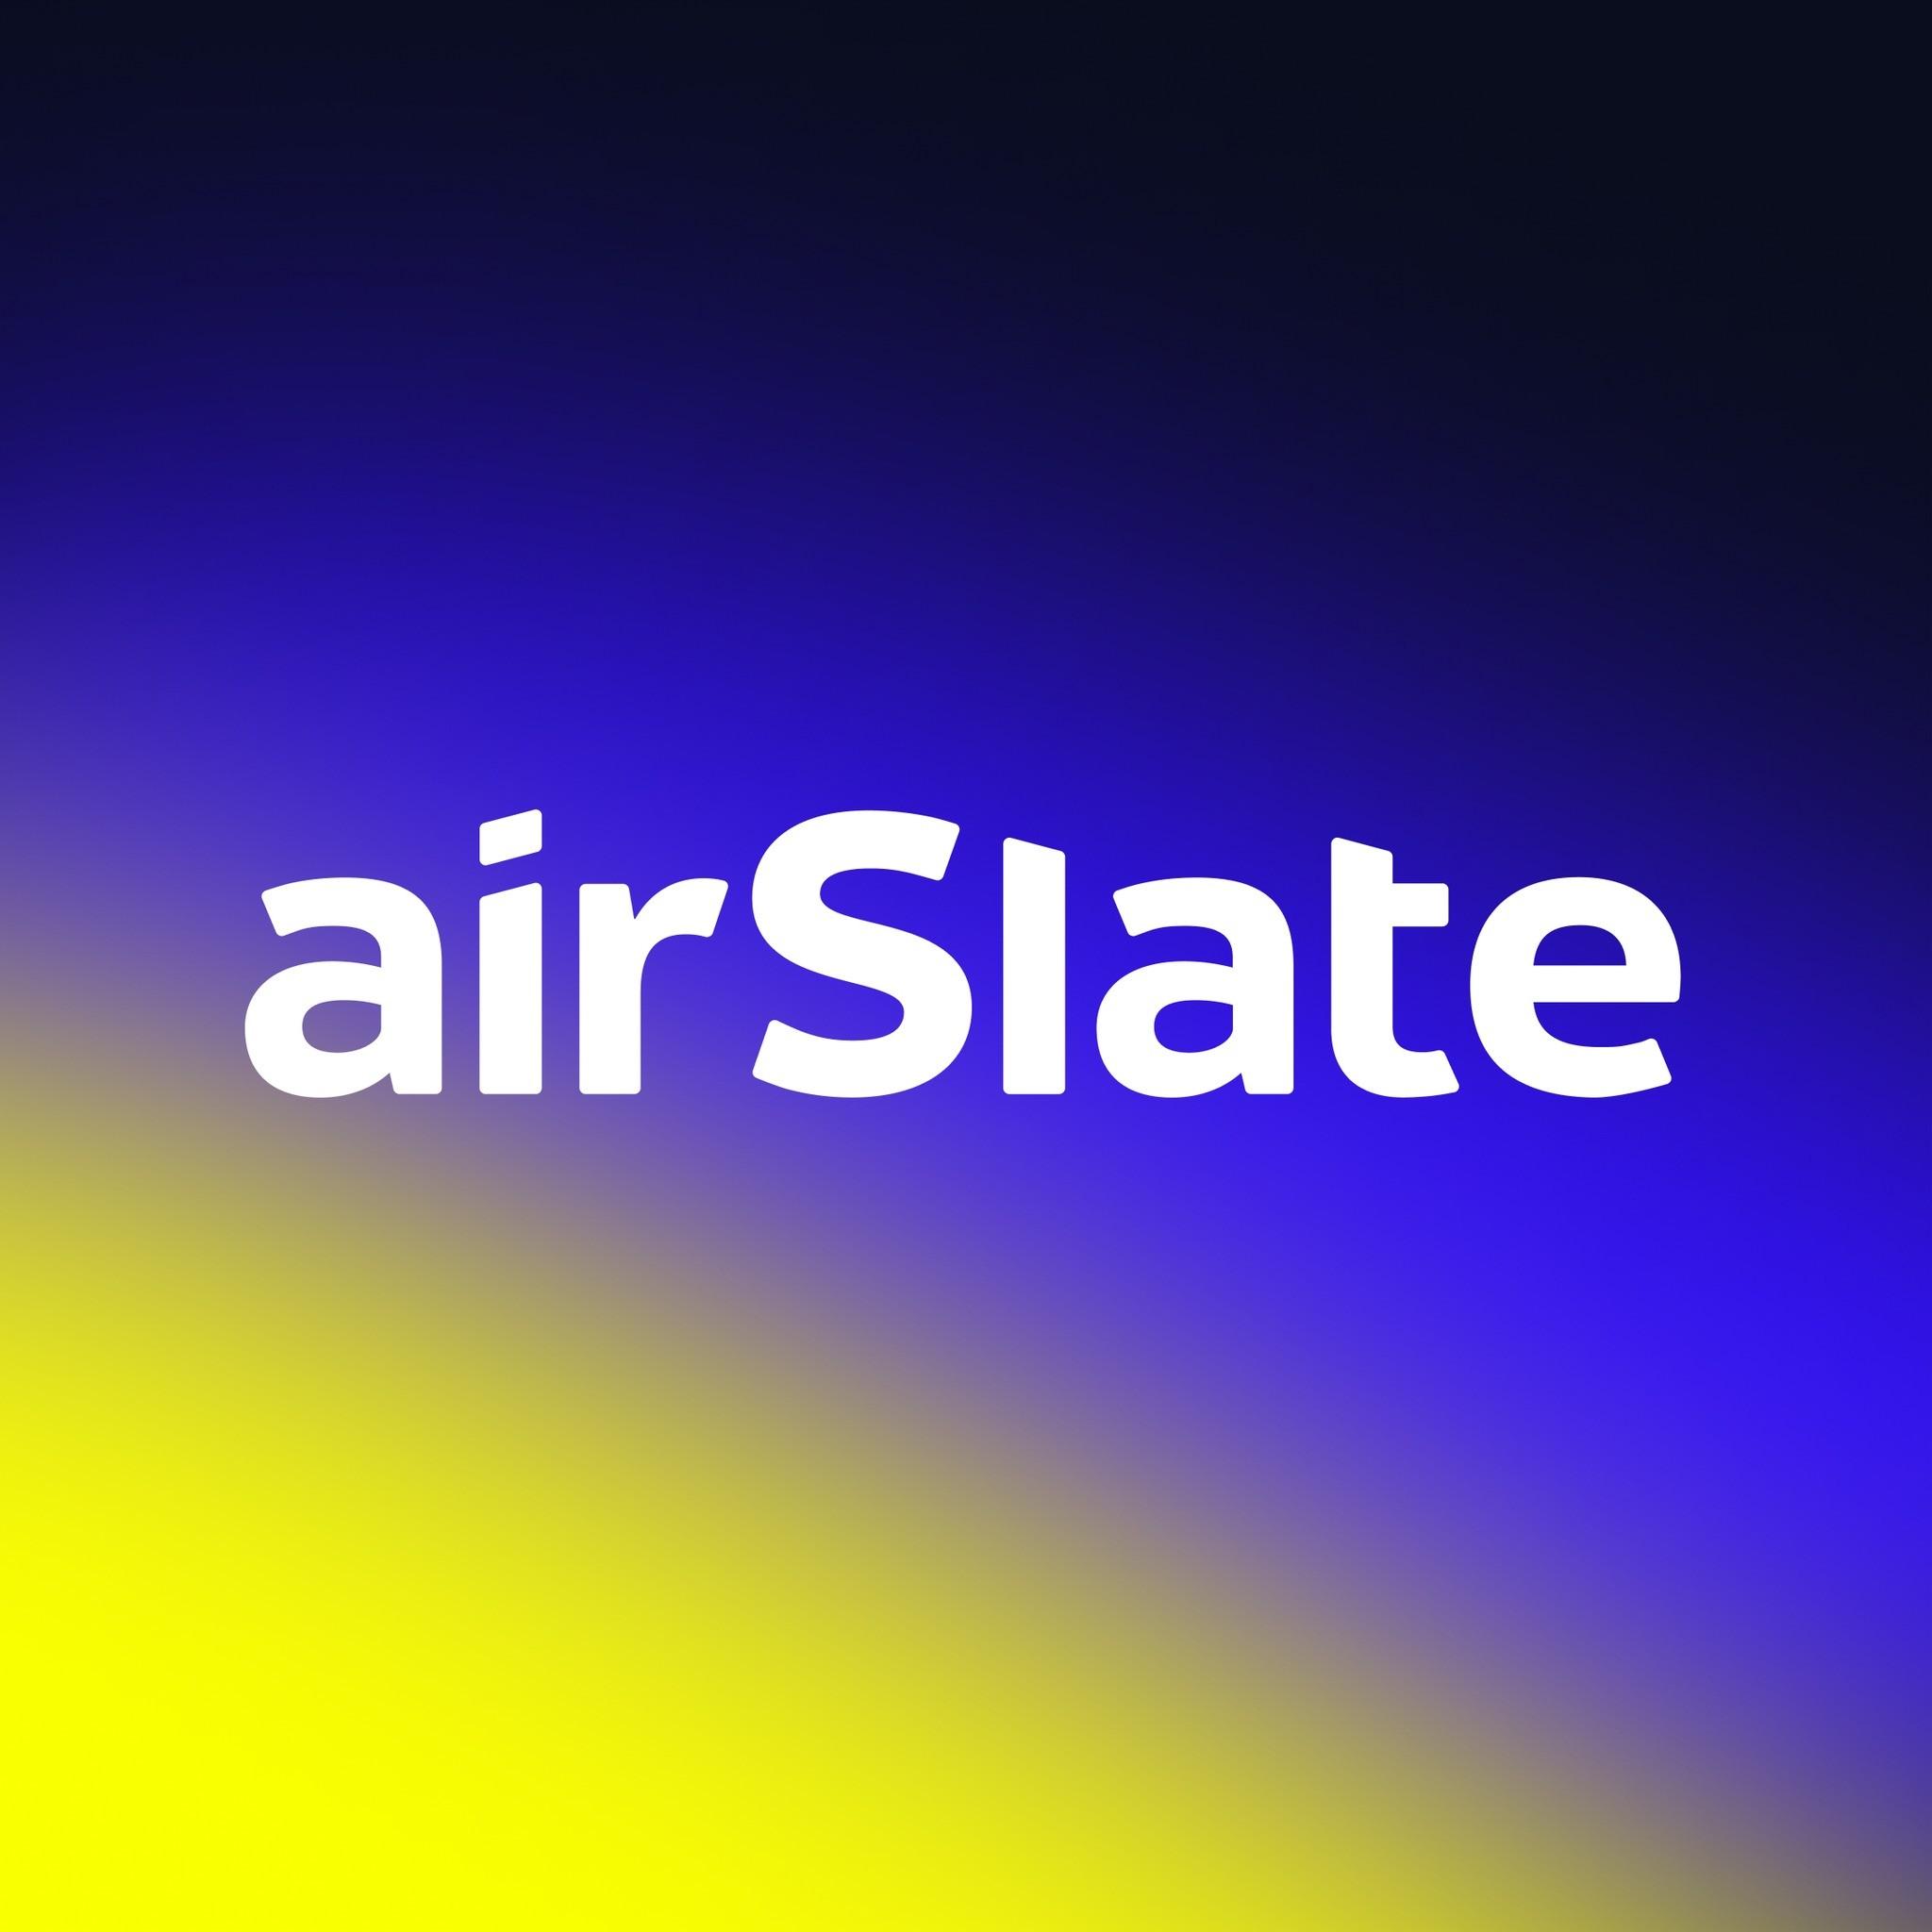 airSlate logo